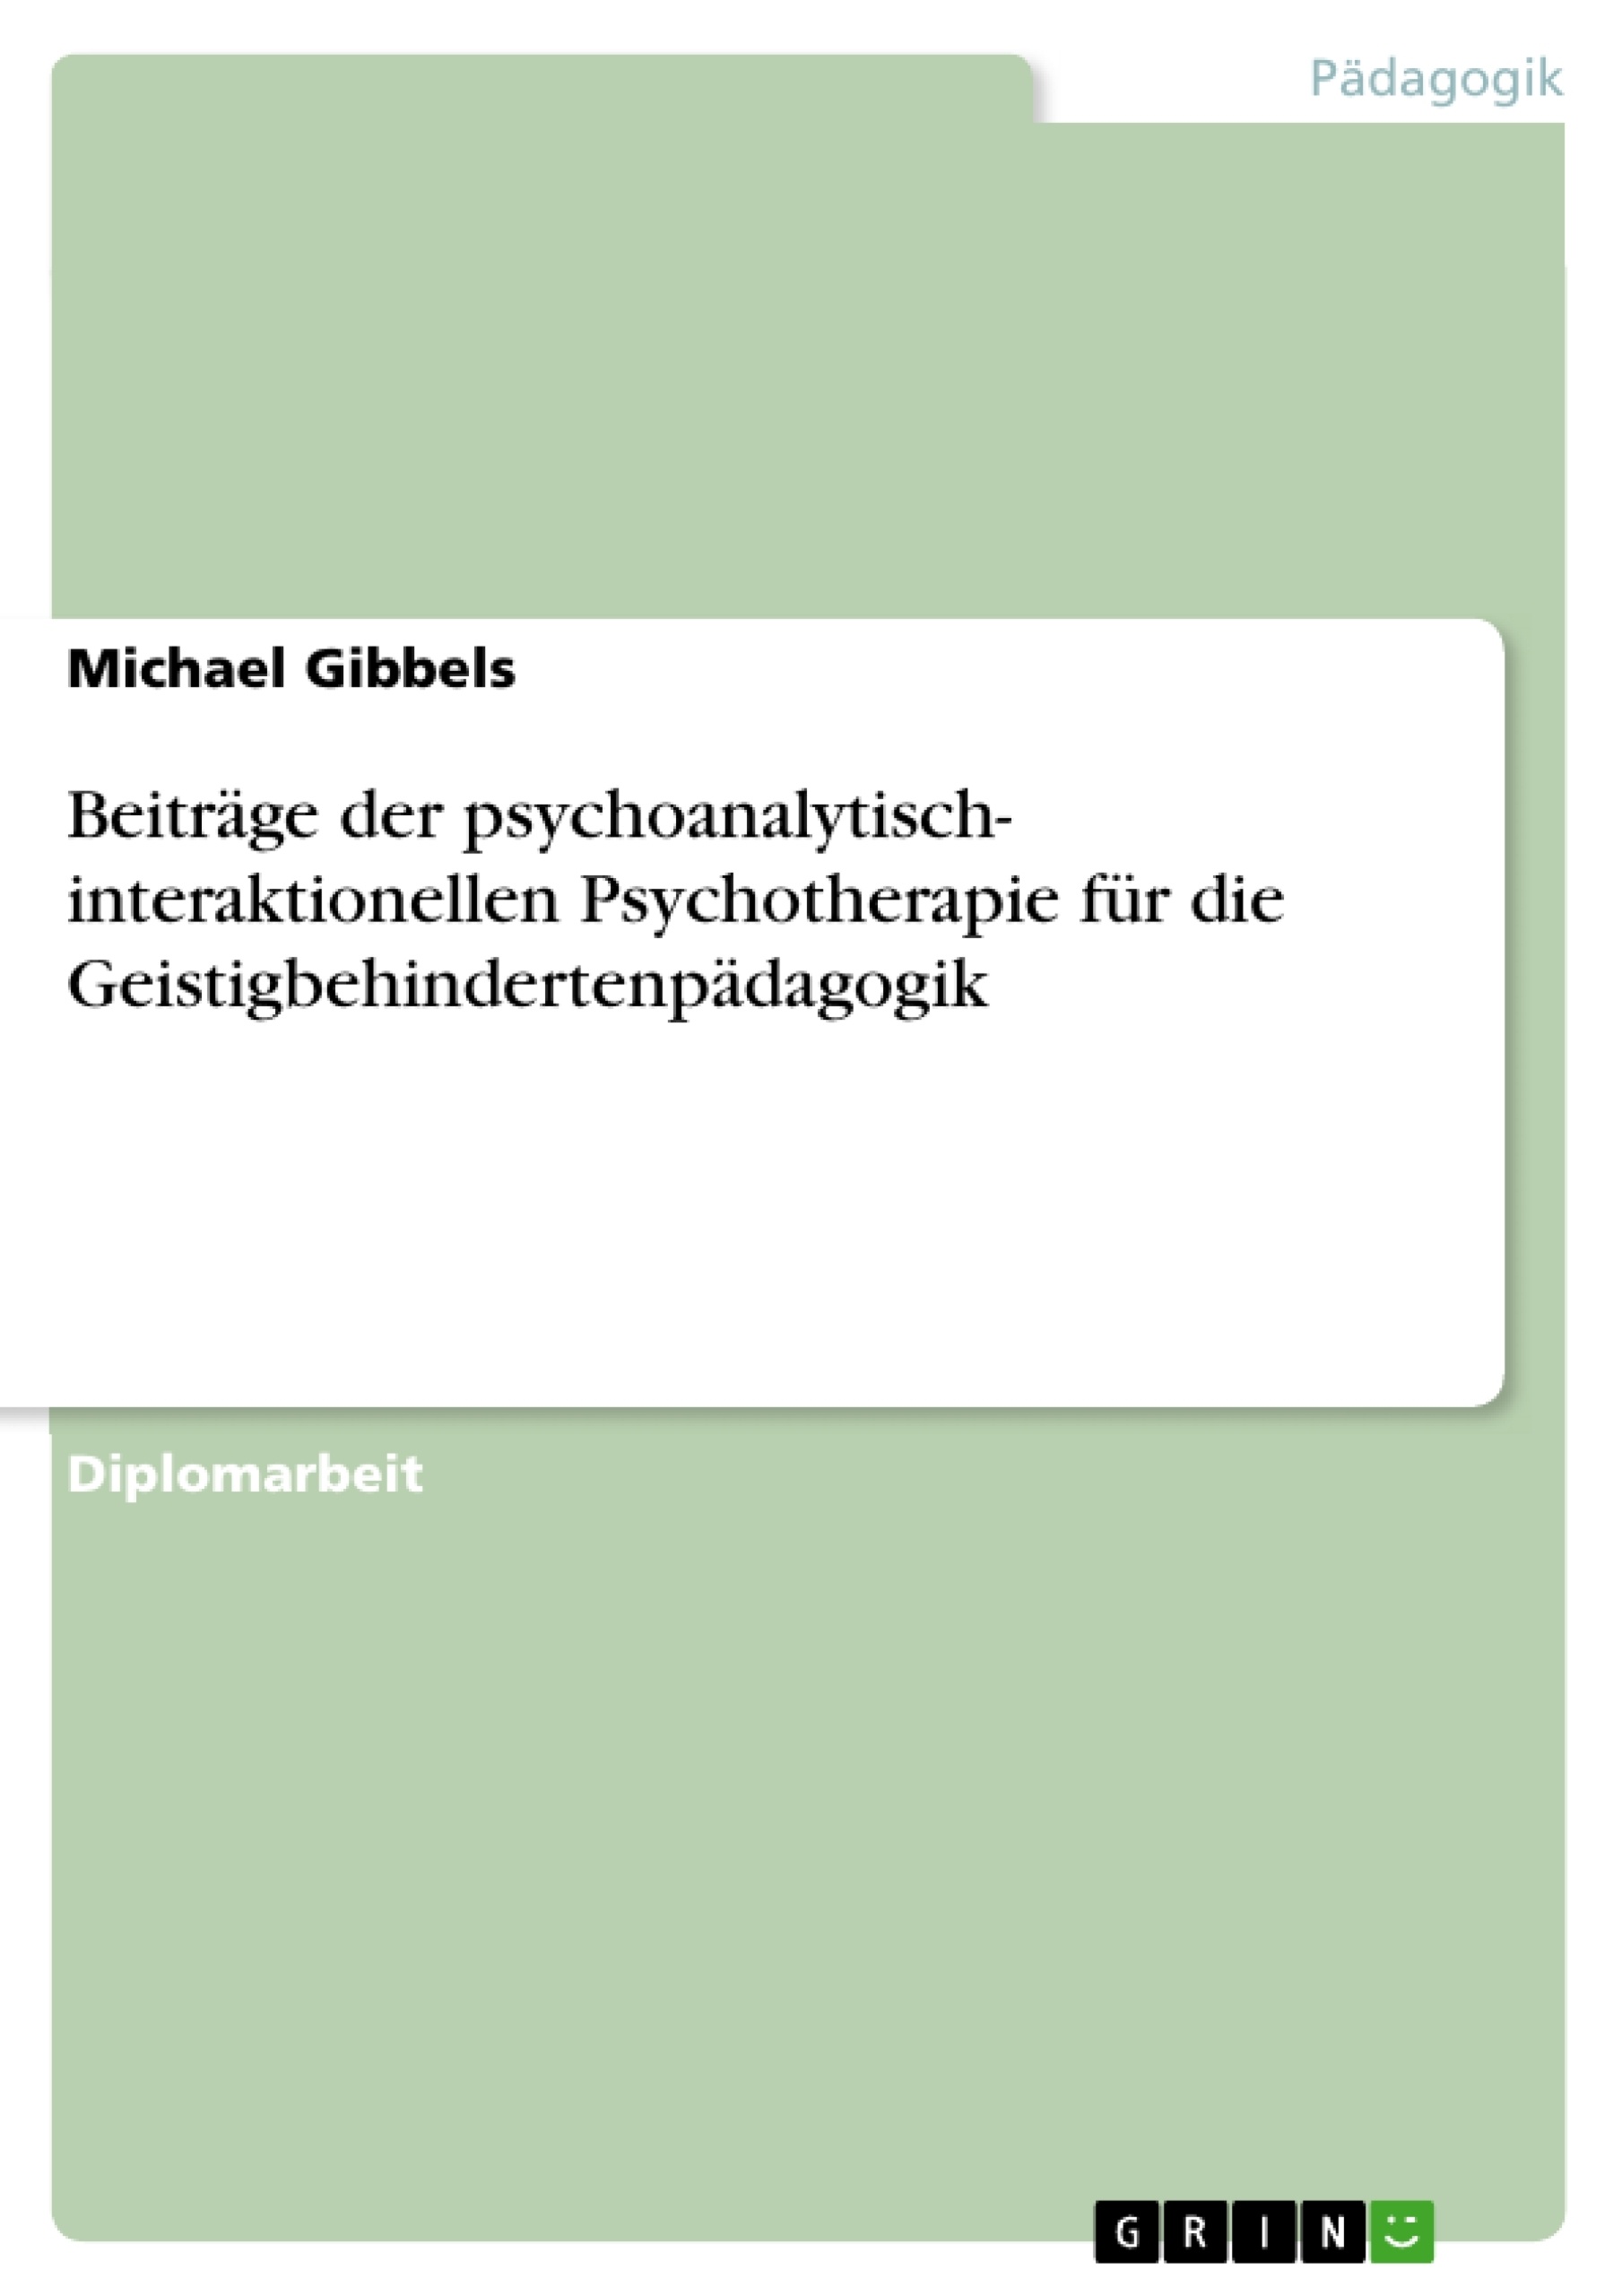 Título: Beiträge der psychoanalytisch- interaktionellen Psychotherapie für die Geistigbehindertenpädagogik